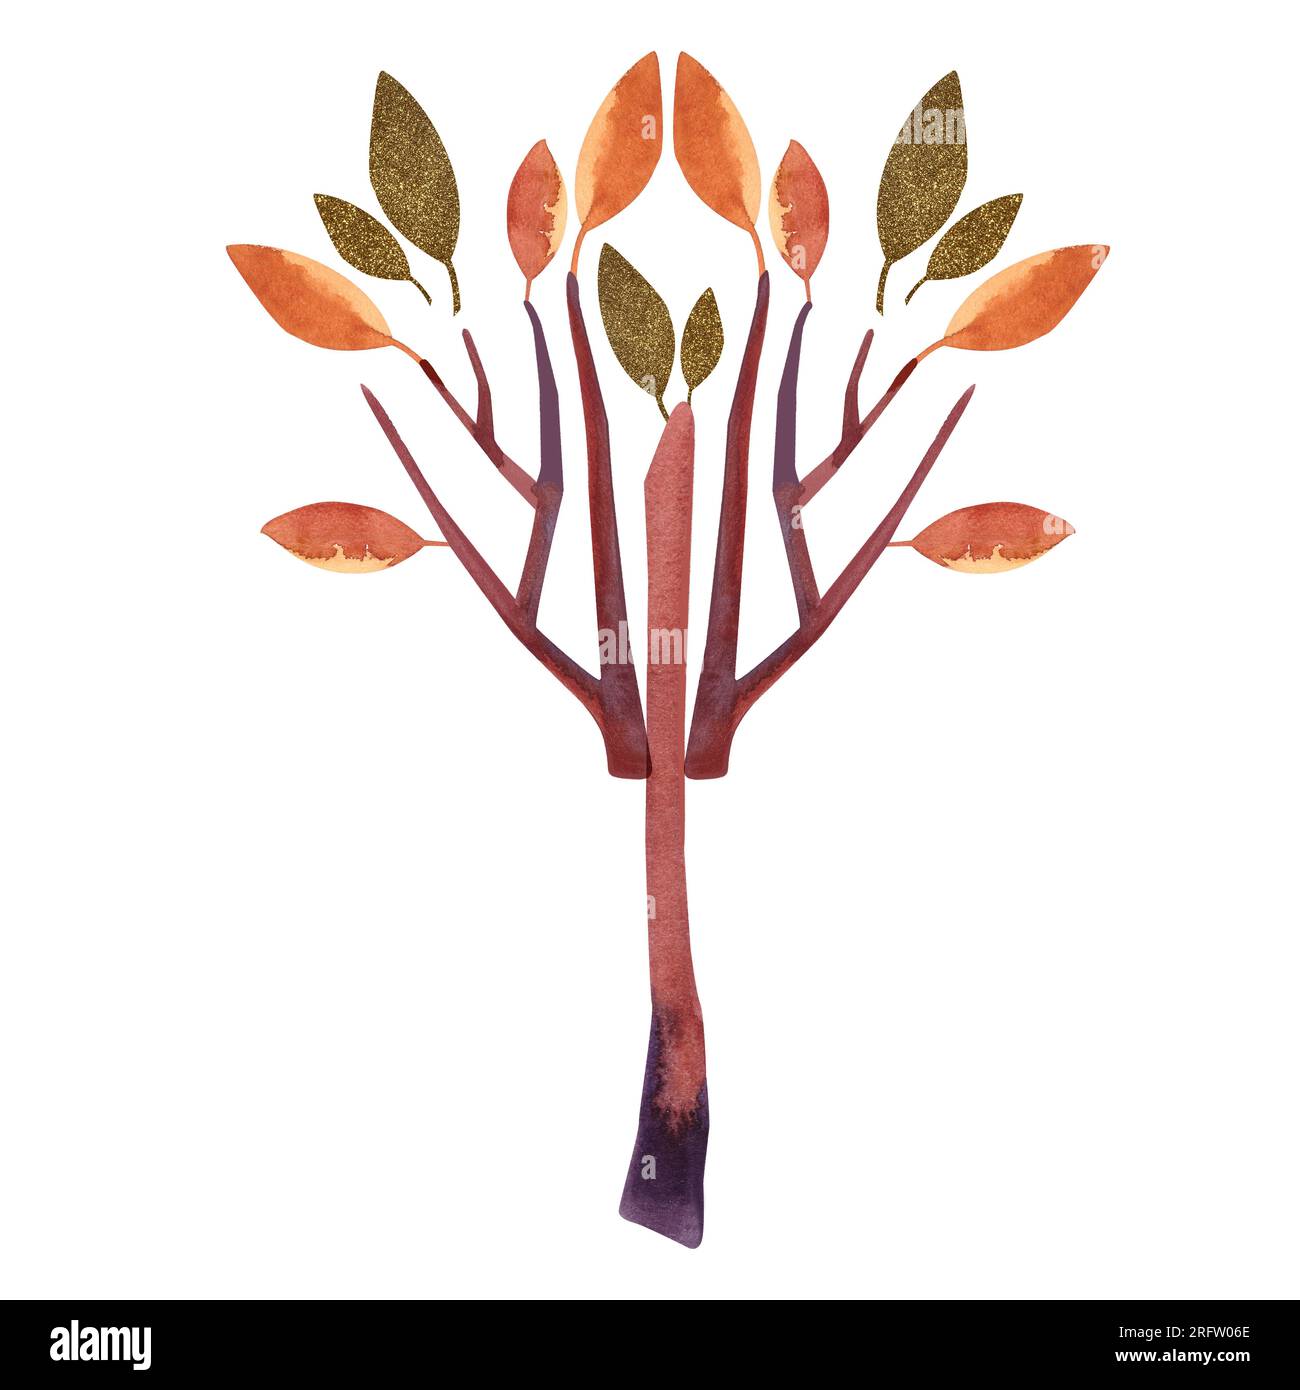 Acquerello albero autunnale con foglie d'arancio. Illustrazione isolata. Clipart. Illustrazione raster per imballaggio, biglietti d'auguri, carta da imballaggio, regali Foto Stock